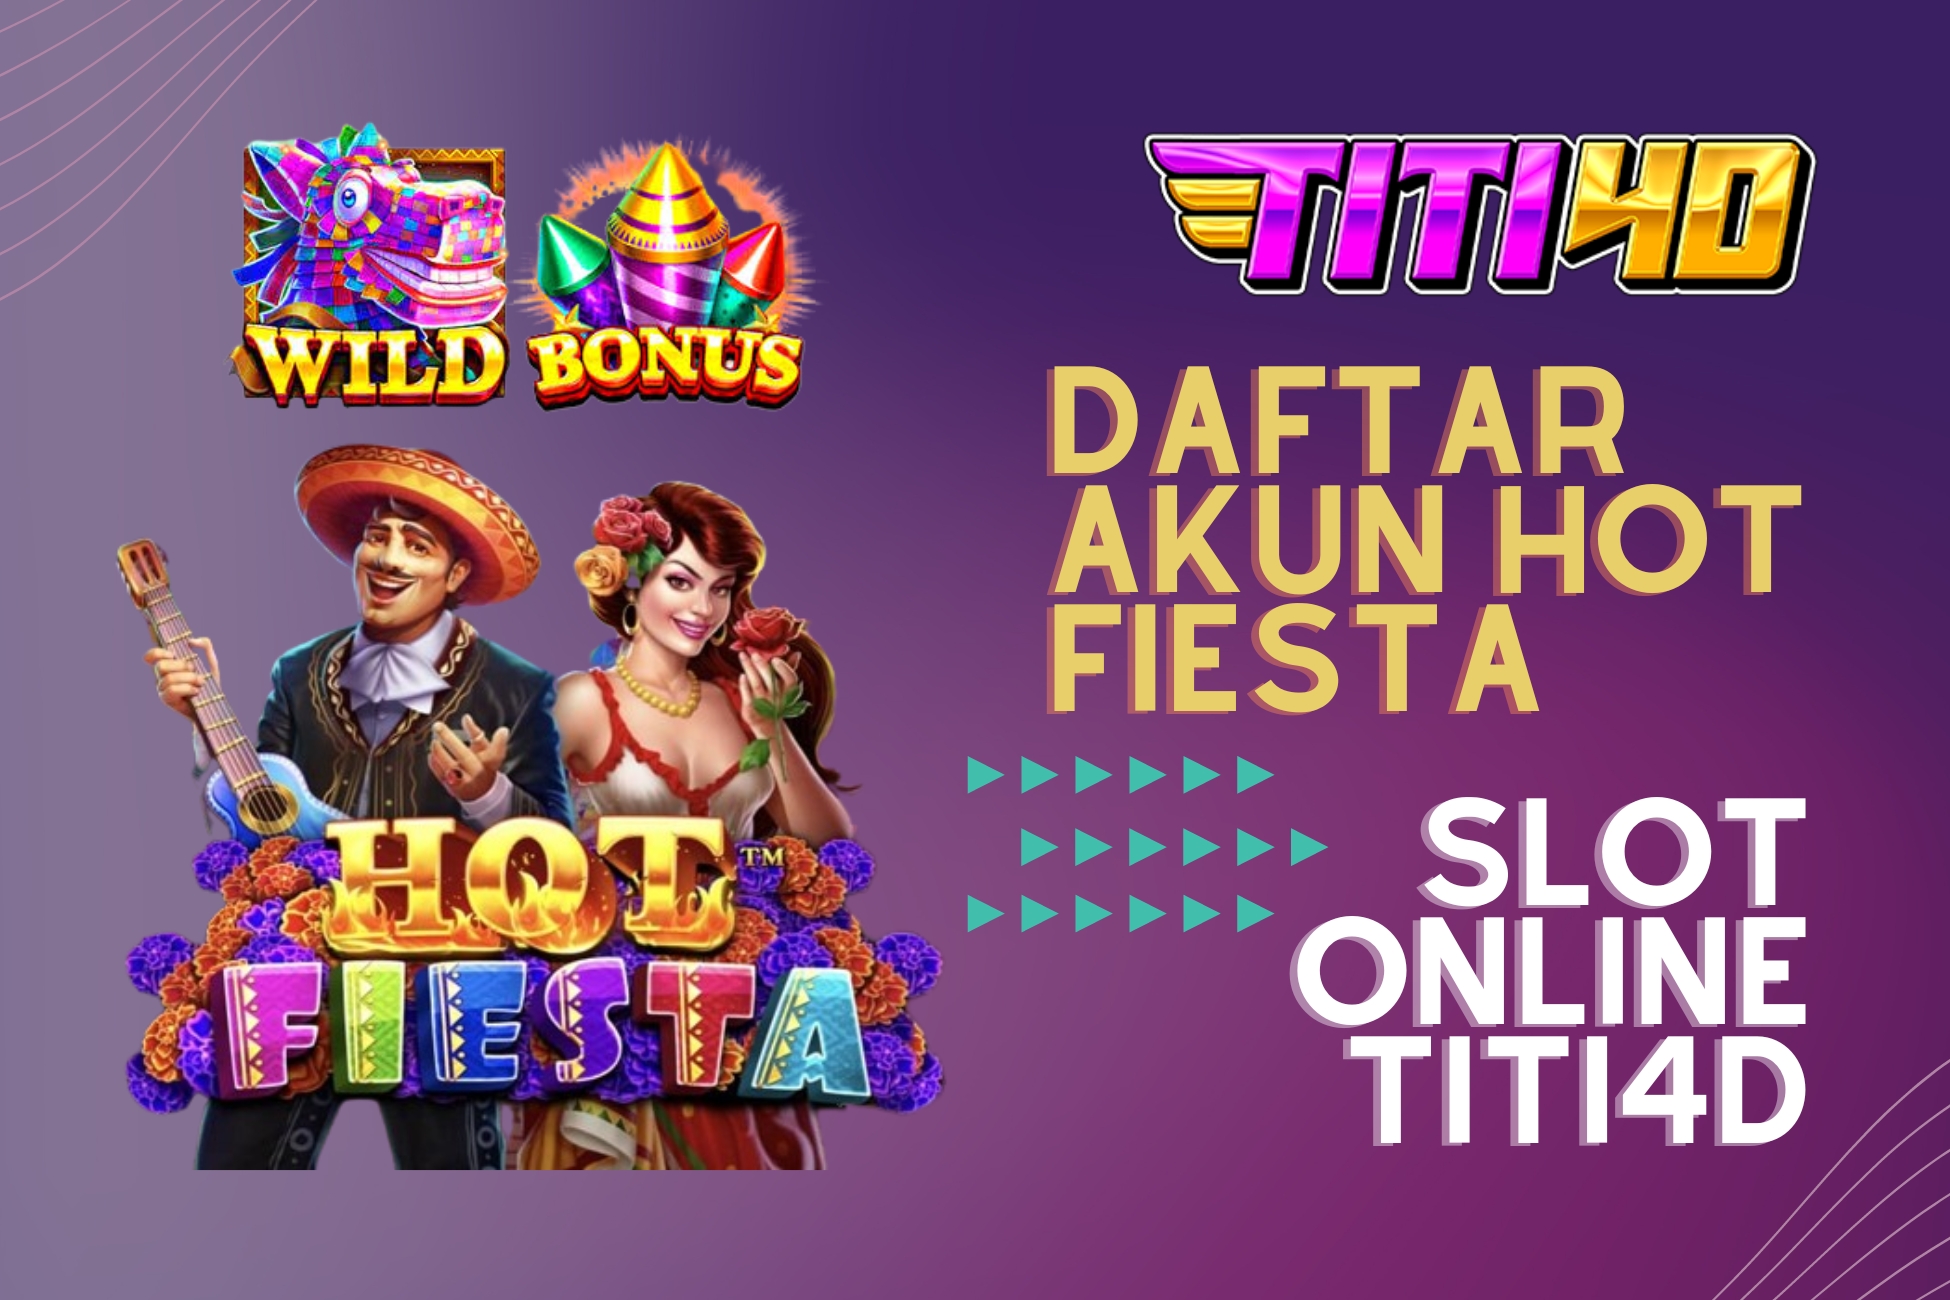 Daftar Akun Hot Fiesta Slot Online TITI4D